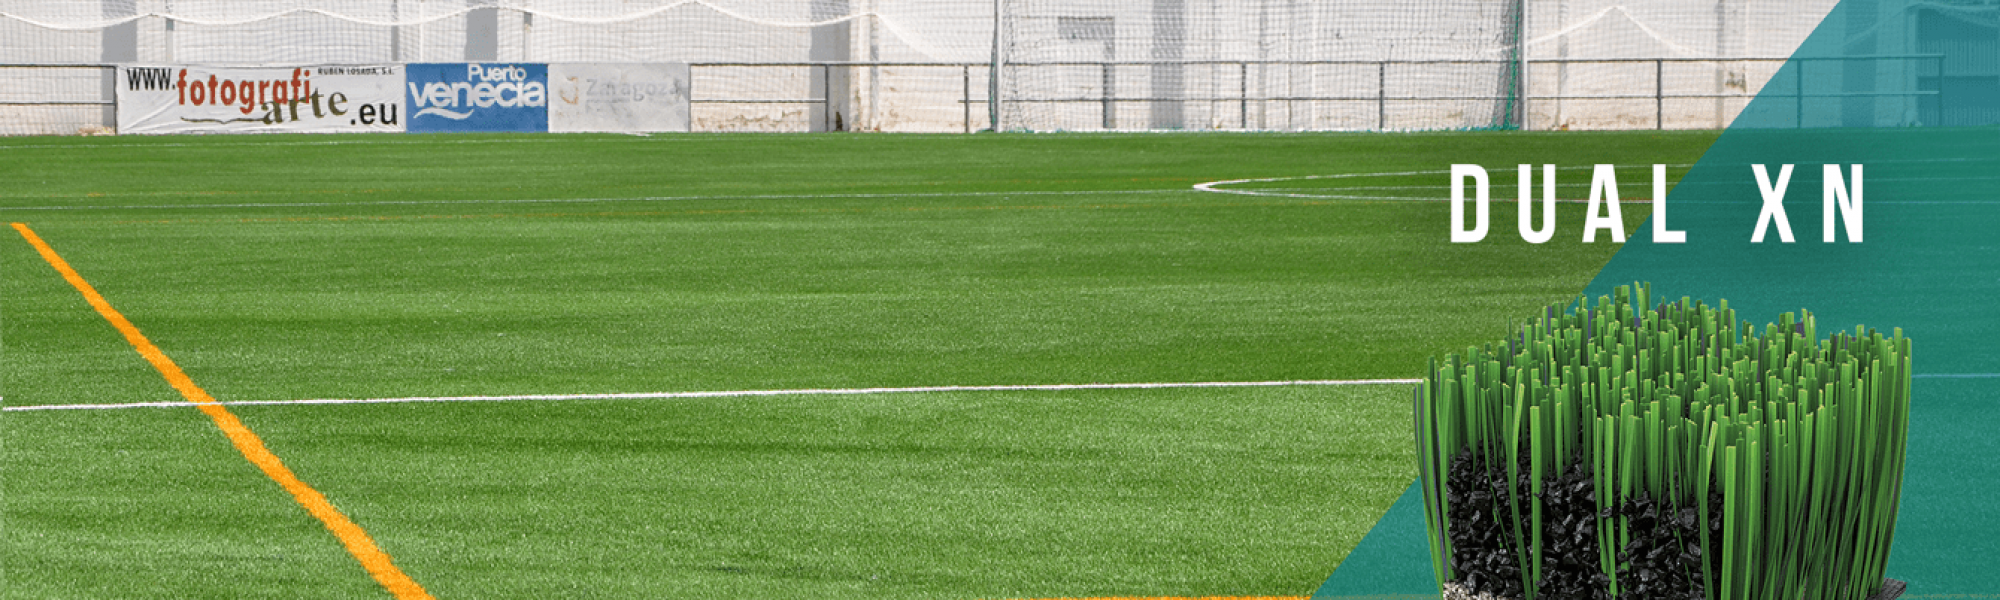 Campo municipal de fútbol José Luis Violeta (Zaragoza), ya equipado con el sistema de césped artificial DUAL XN.